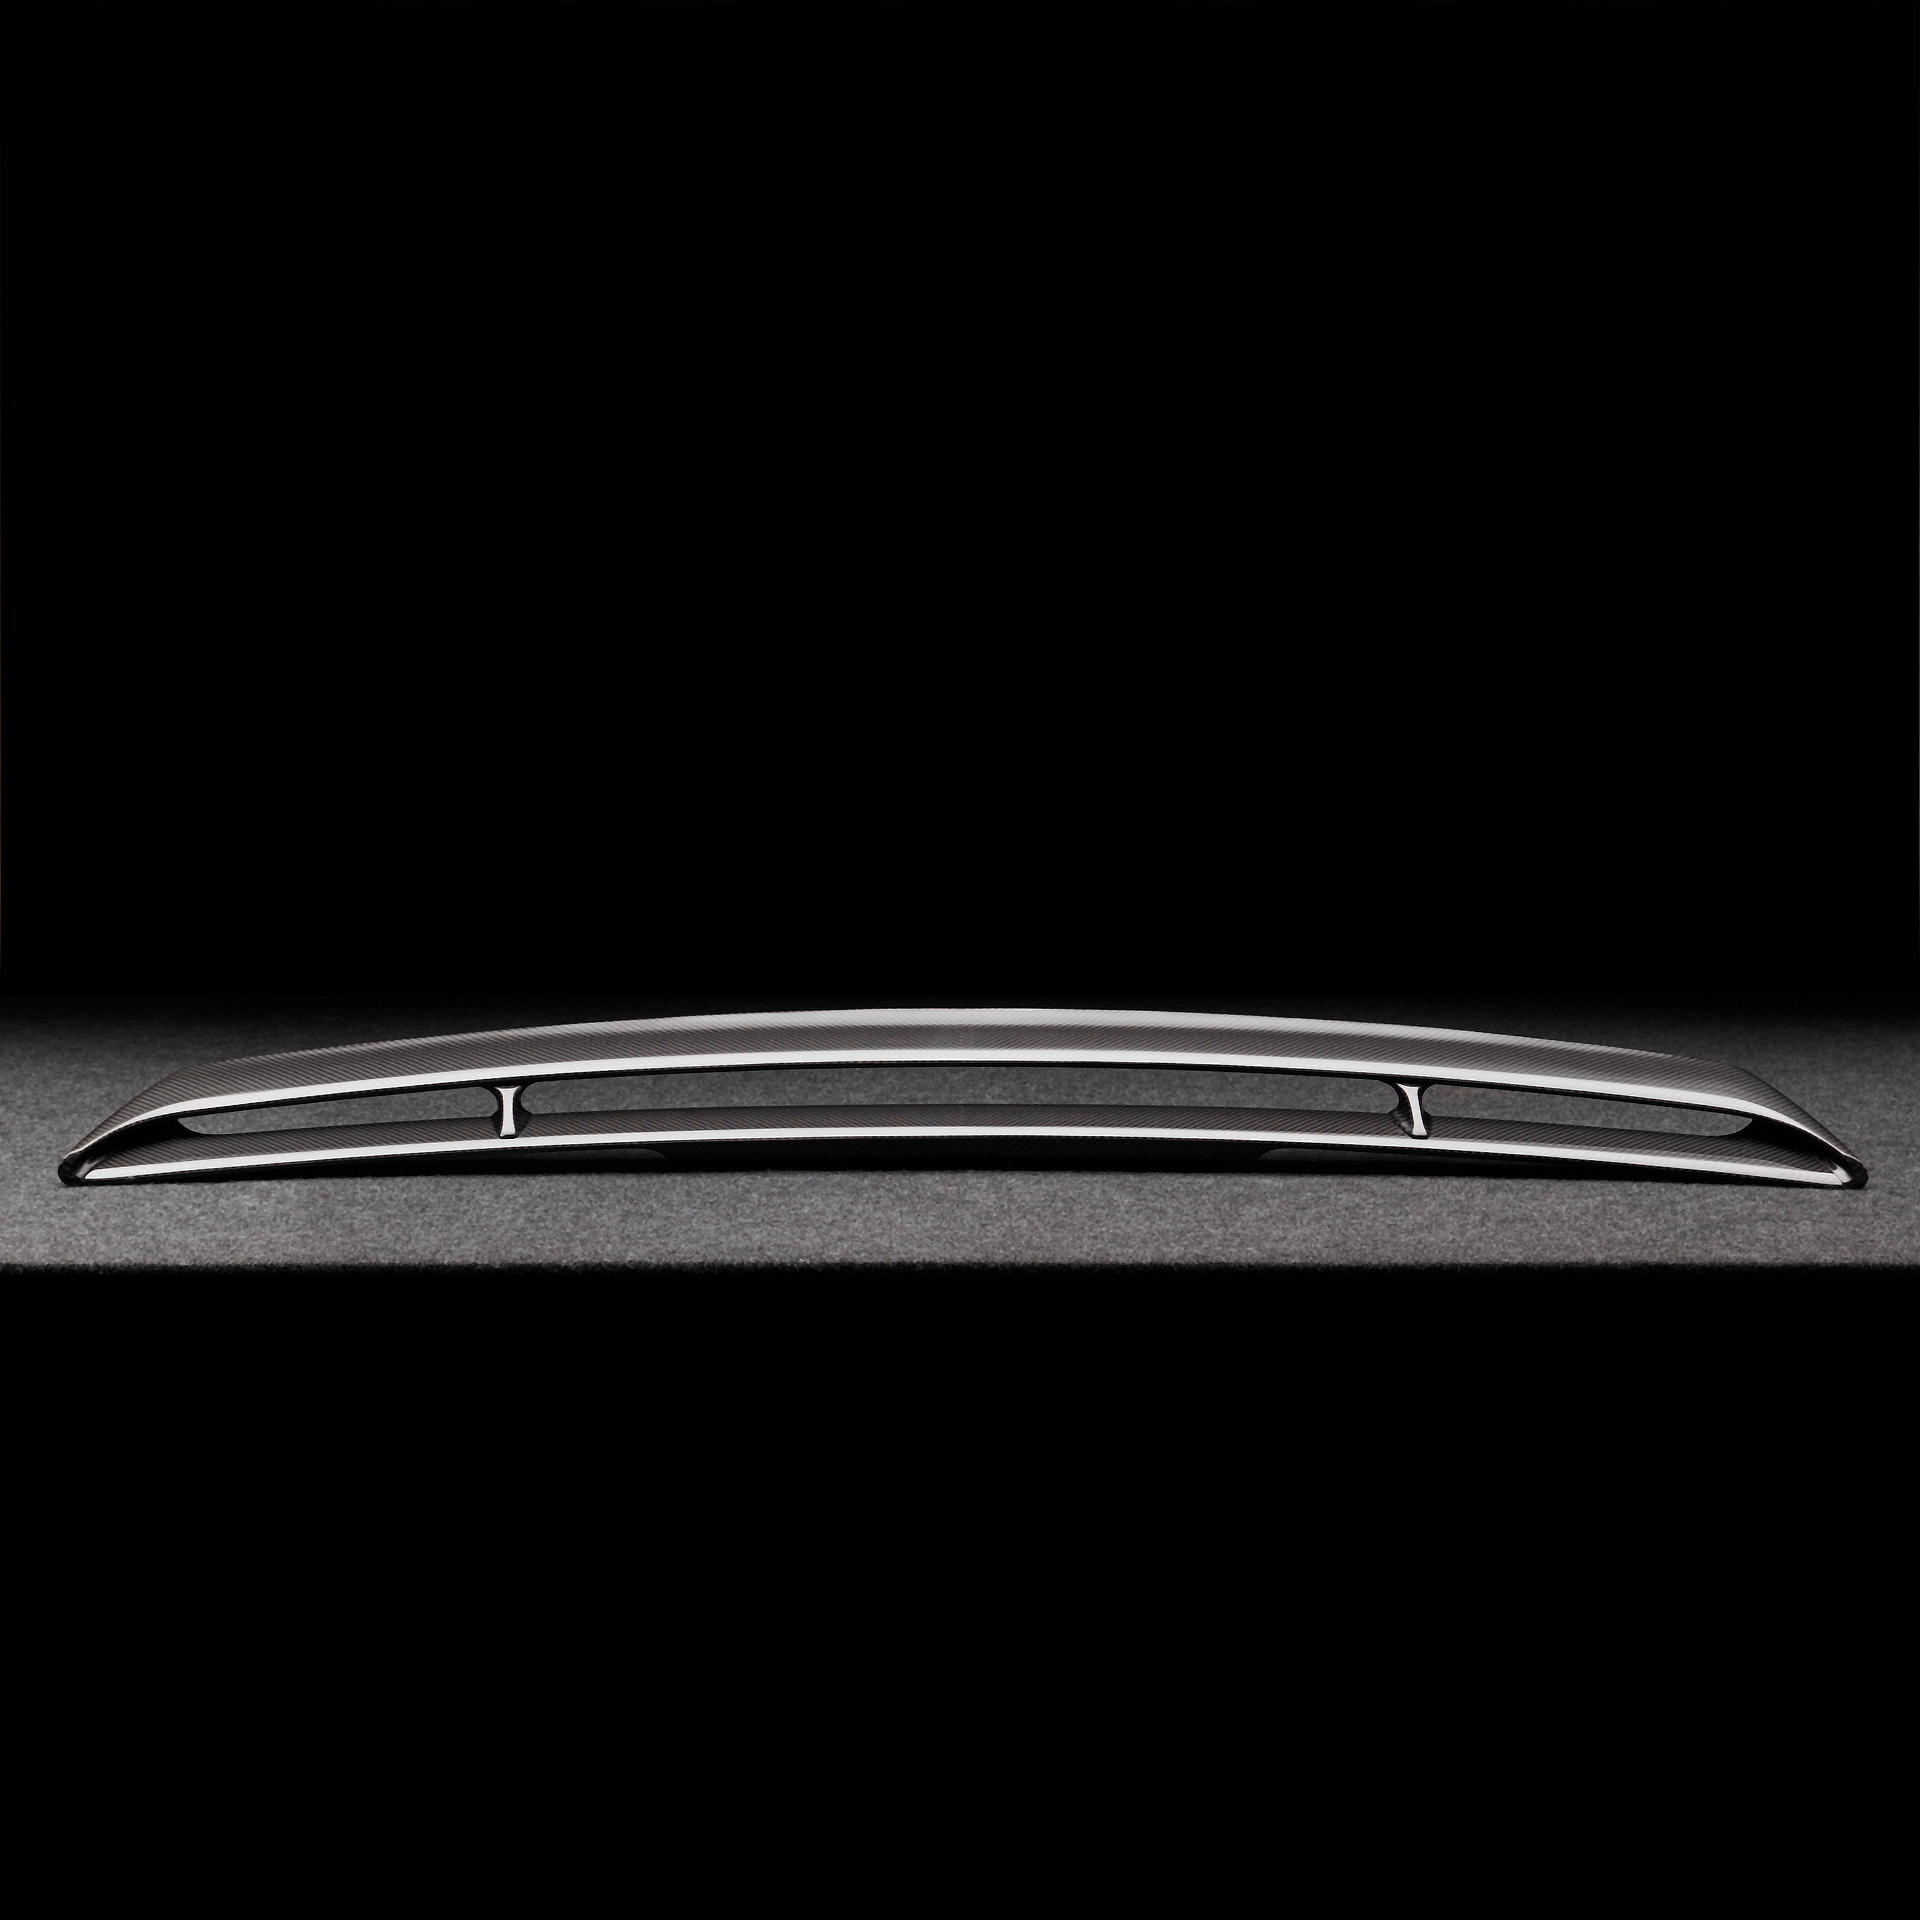 Bestellen Sie einen aerodynamischen Spoiler für den Bentley Bentayga MLB bentayga-speed-edition-12 6.0-LITER TWIN TURBO W12 TYROLEAN /2020/2021/2022/2023/2024